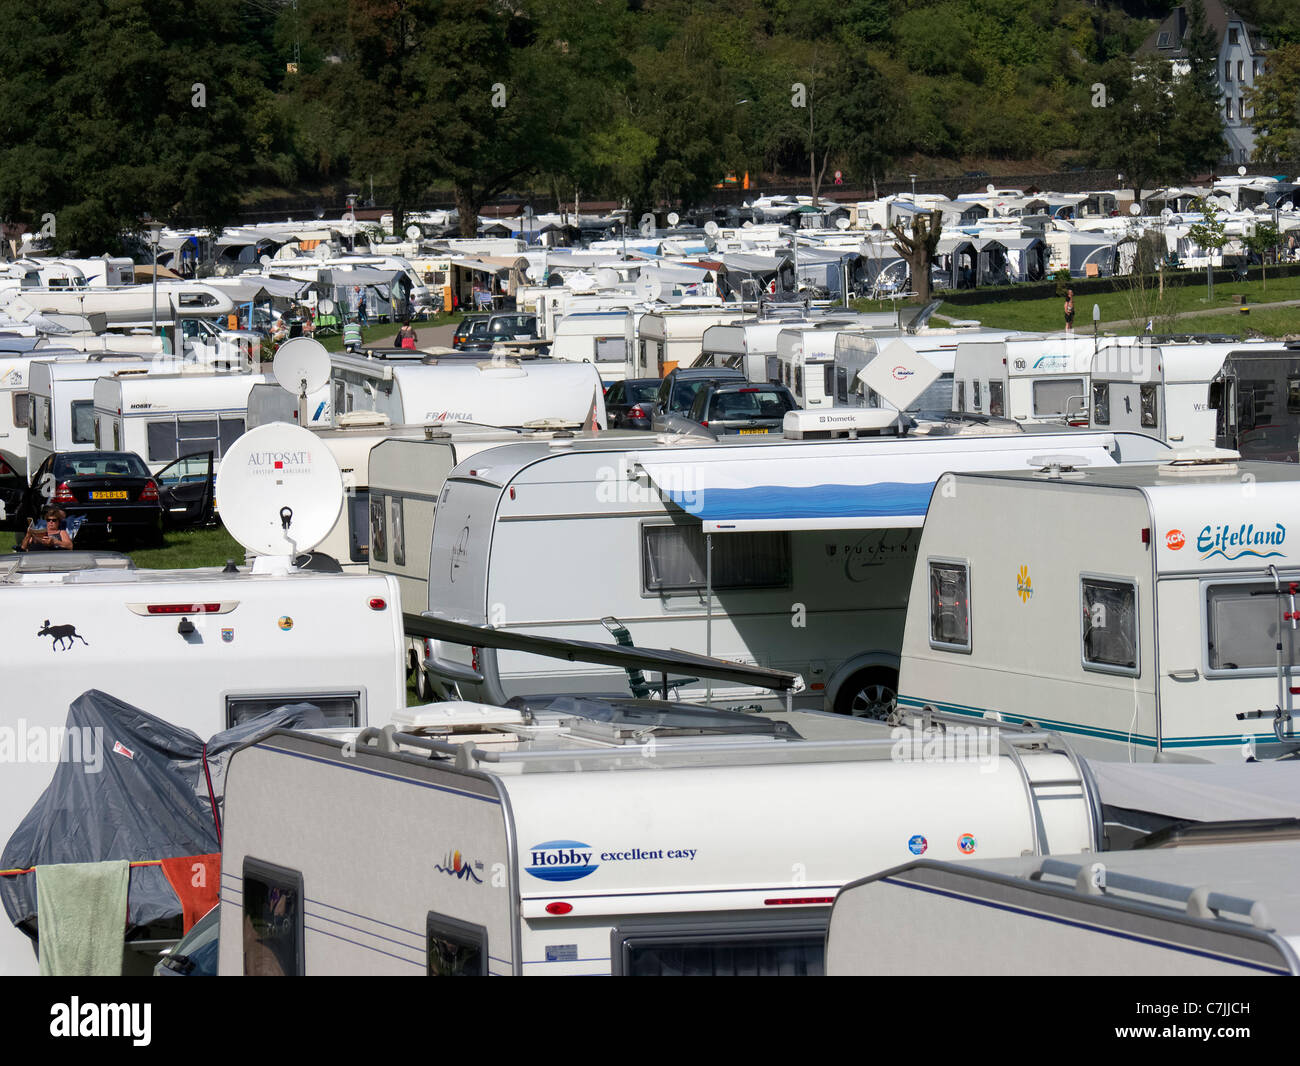 Busy caravan park beside River Rhine at the famous Loreley rock near Saint Goar in Germany Stock Photo